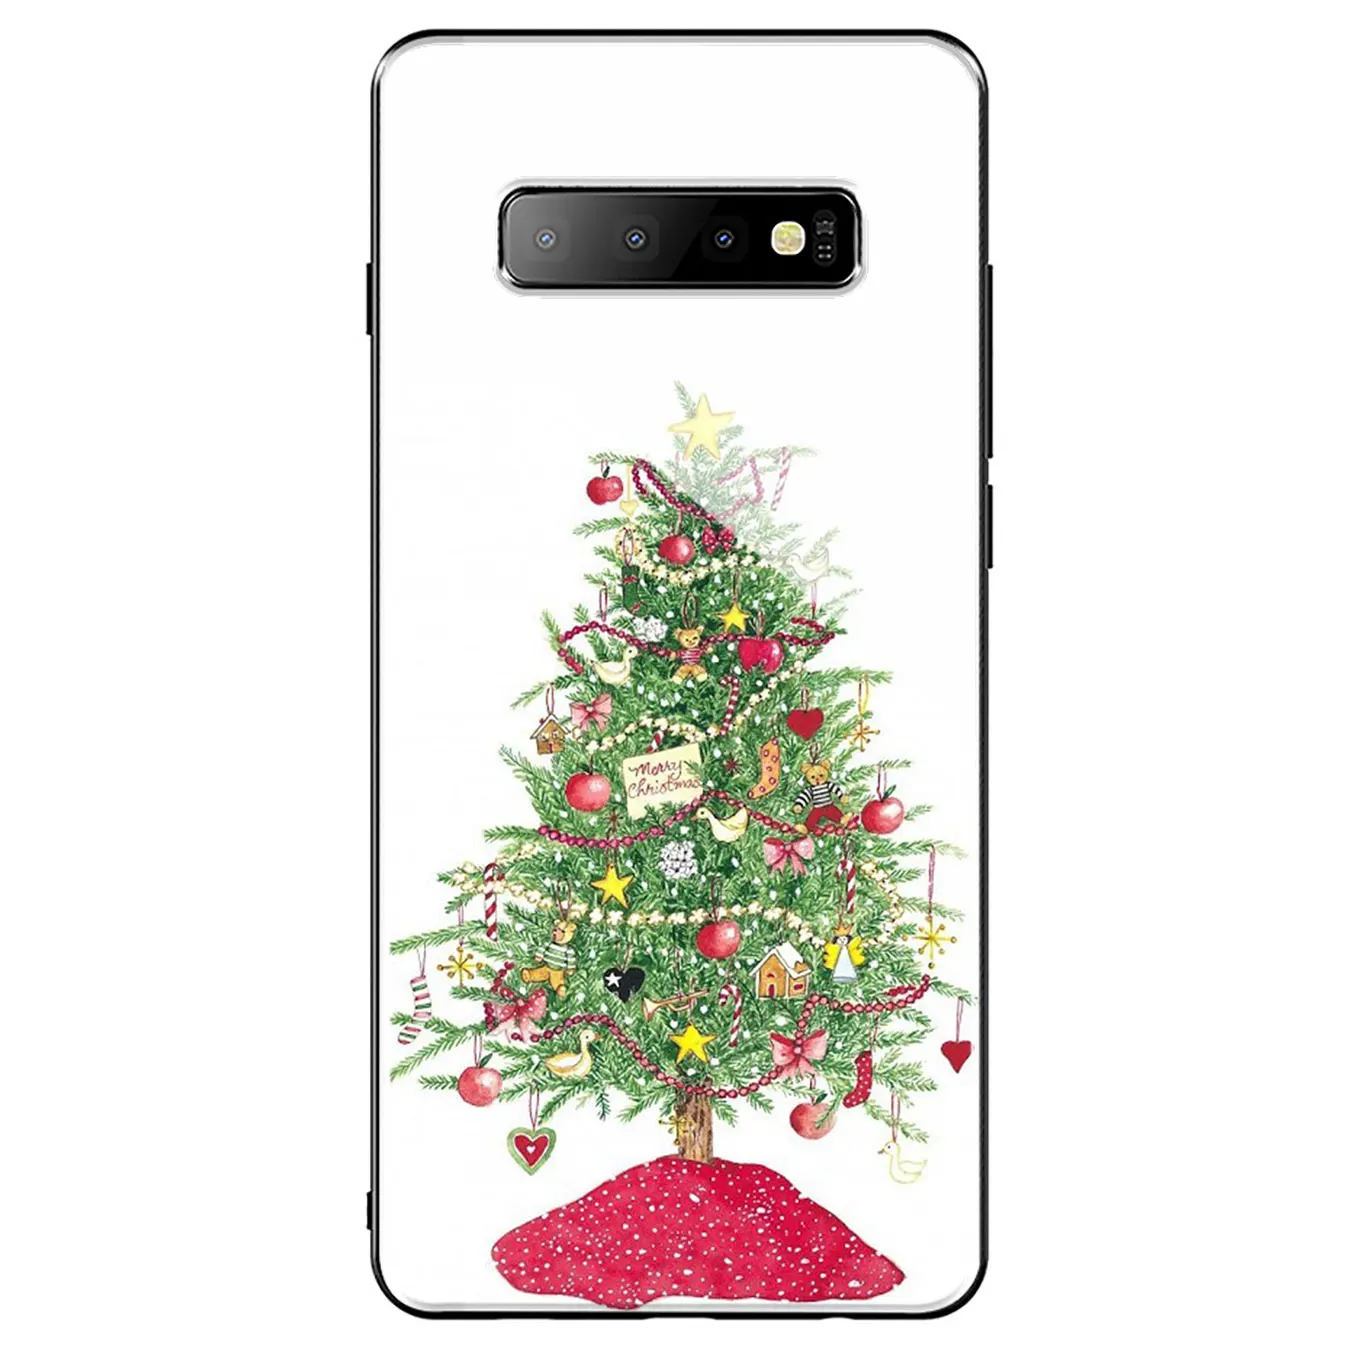 Anul nou, Crăciun Sticla Caz de Telefon pentru Samsung Galaxy S20 Ultra S10 + S8 S9 S7 Edge Nota 8 9 10 Plus Lite